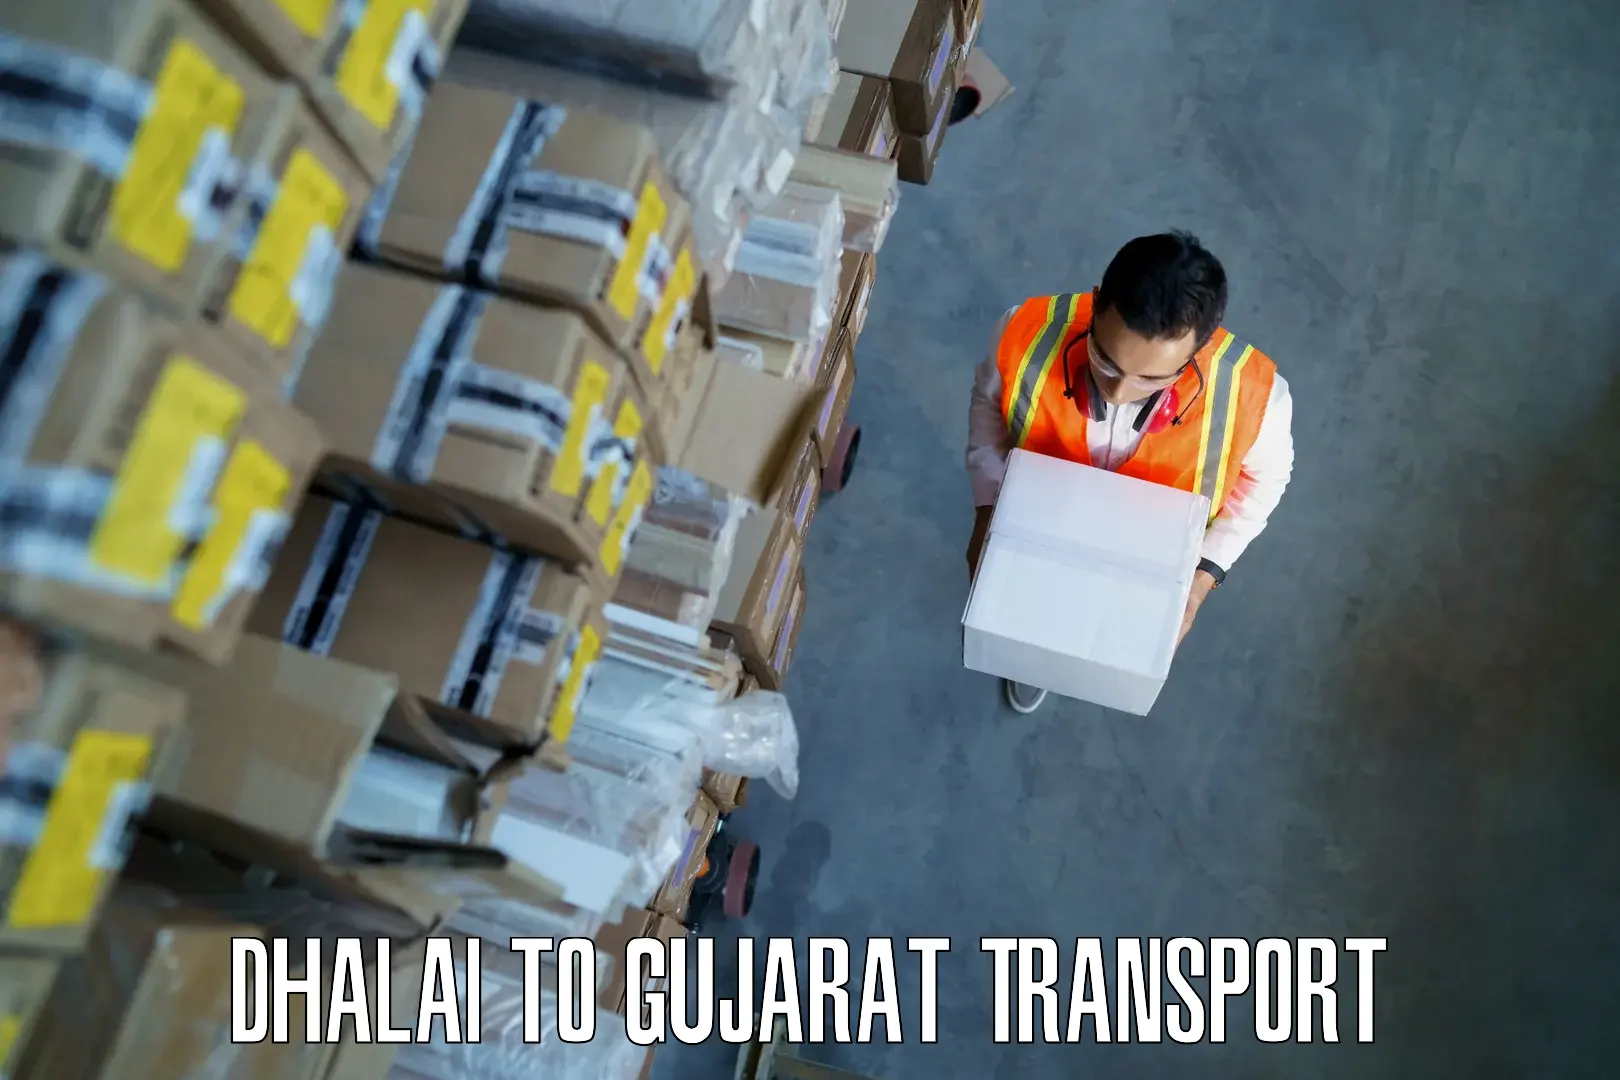 Intercity goods transport Dhalai to Dhandhuka